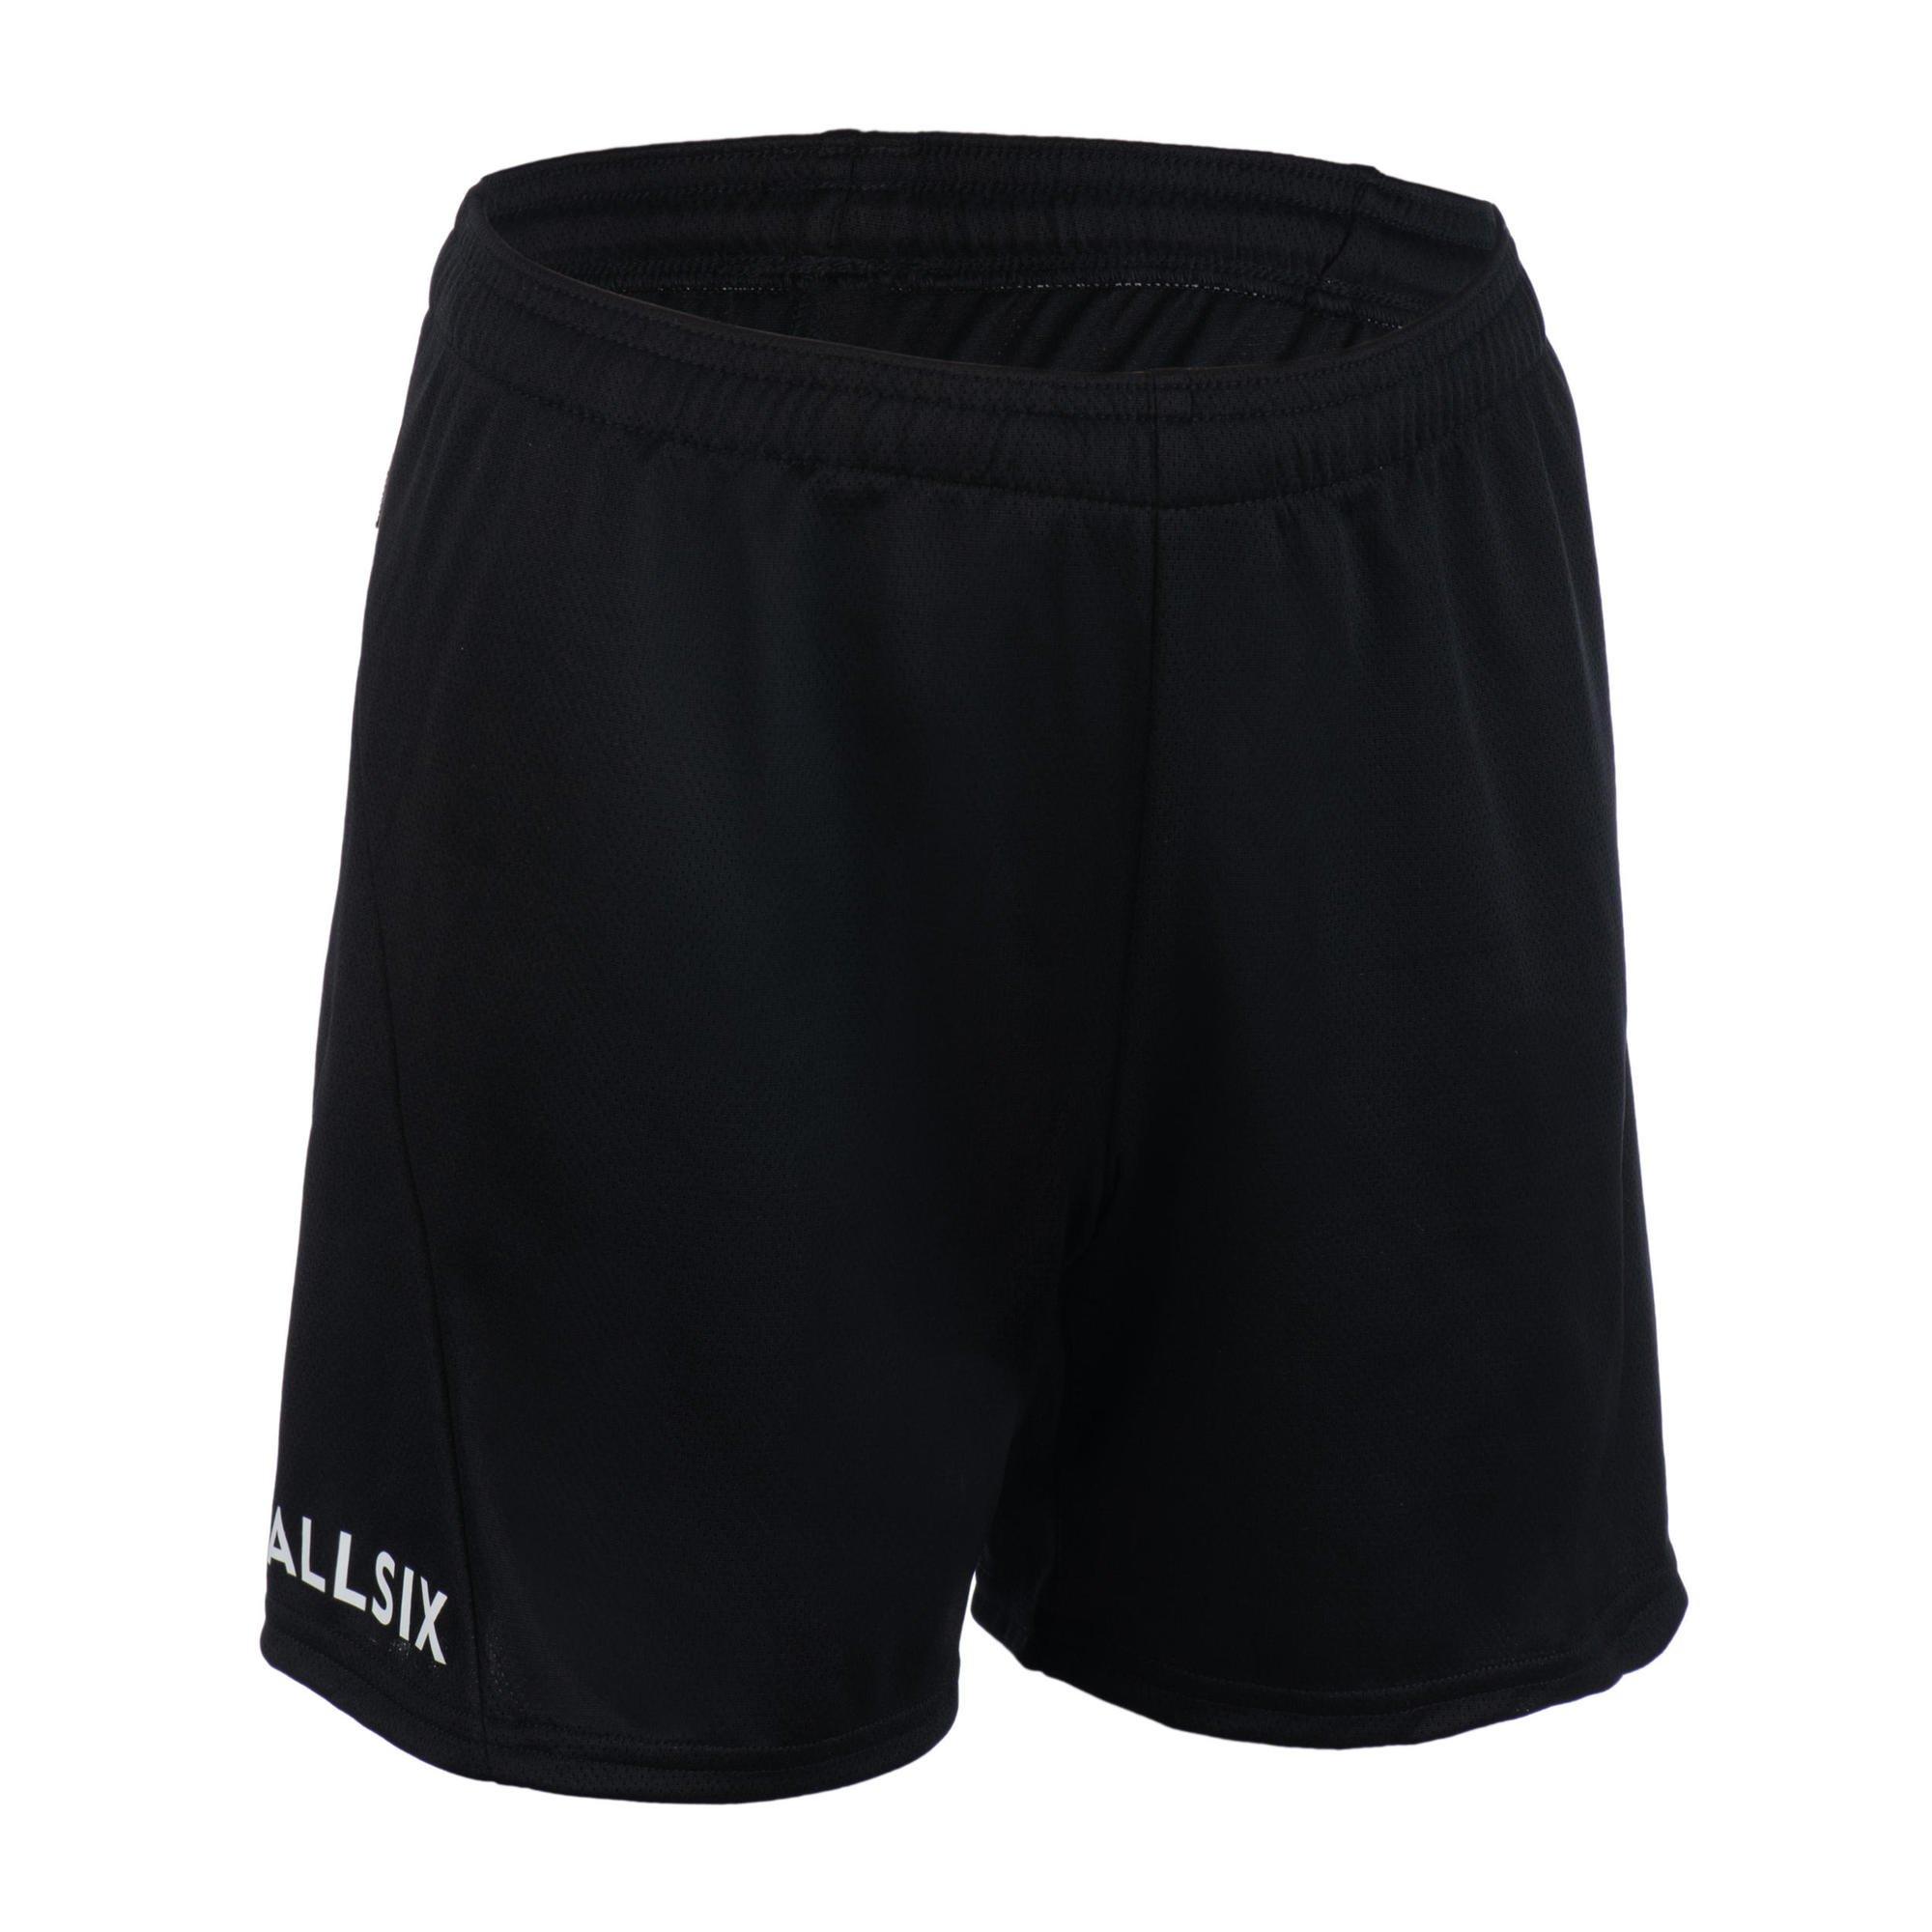 Волейбольные шорты Decathlon V100 Allsix, черный цена и фото